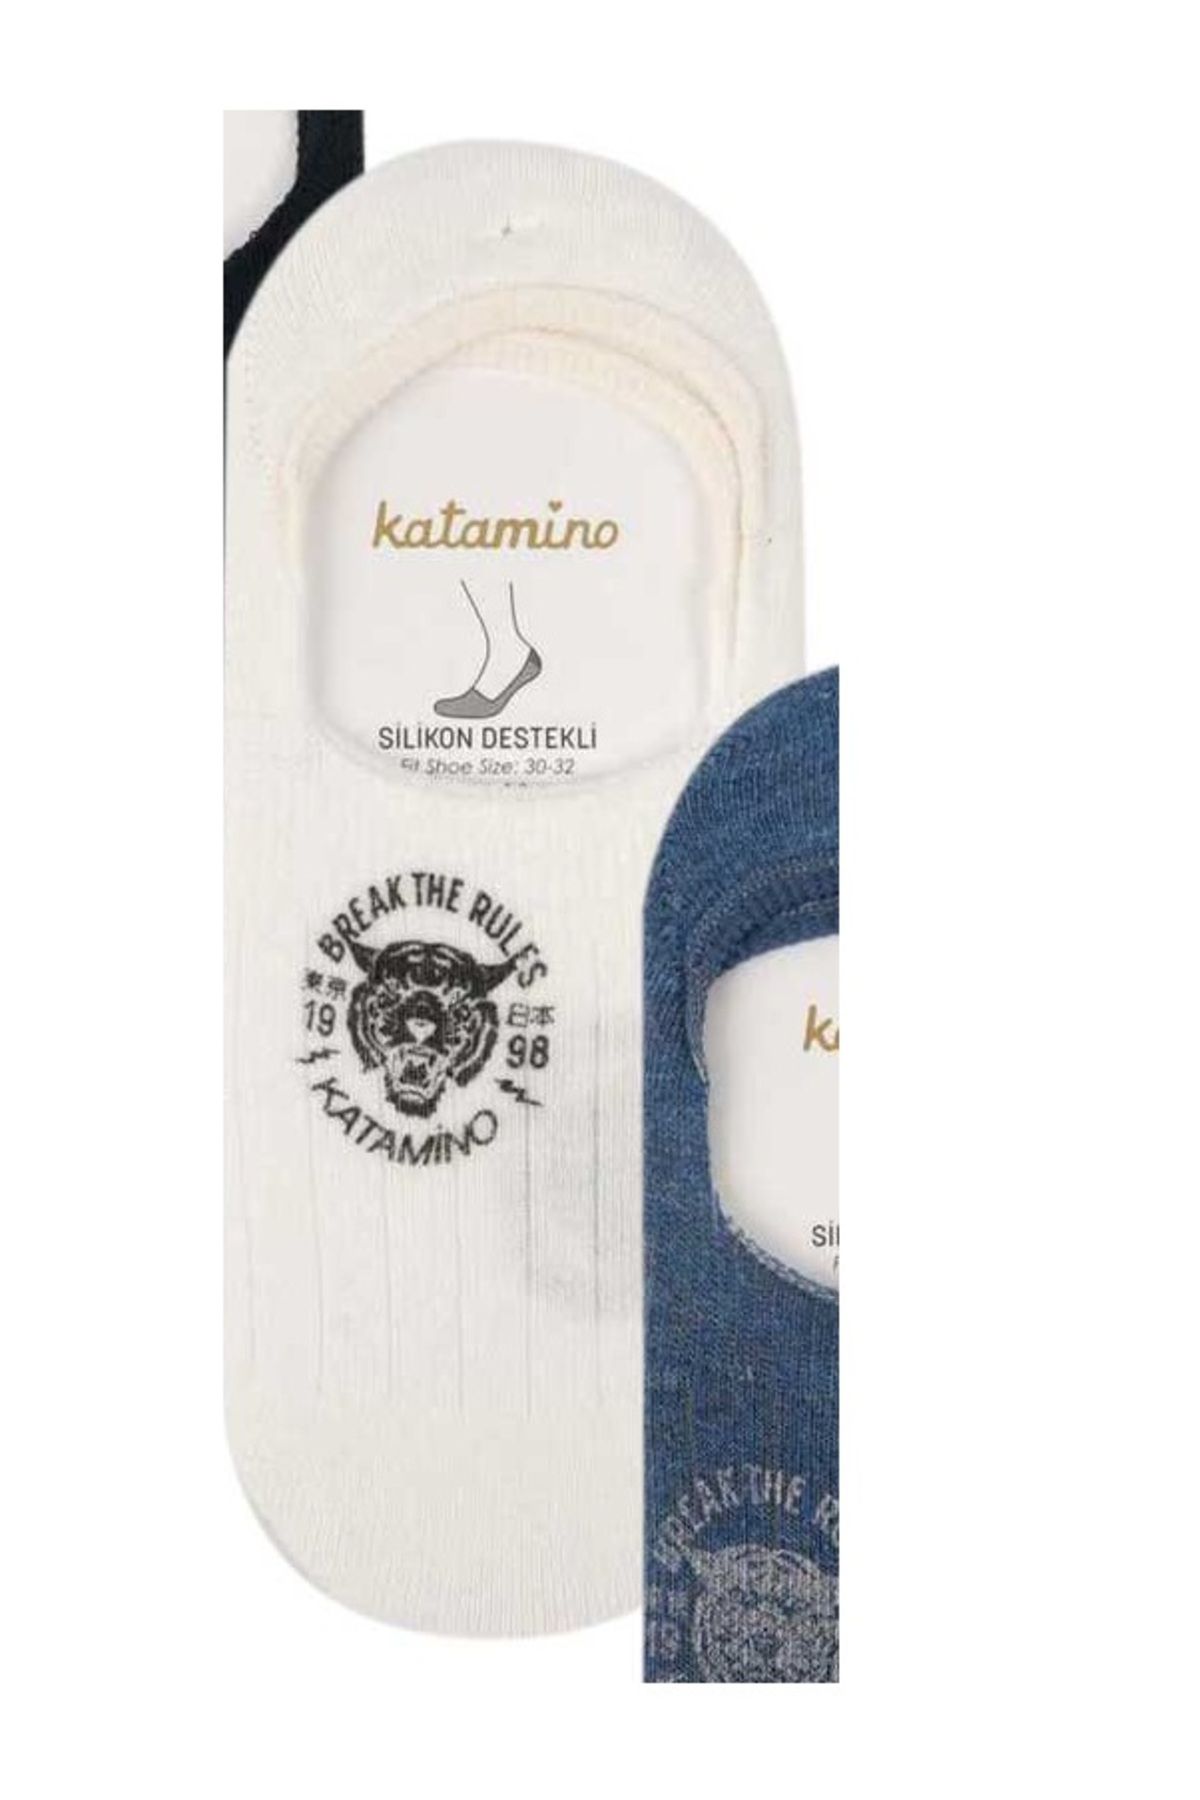 Katamino Rules Baskılı Silikon Destekli Babet Erkek Çocuk Çorabı